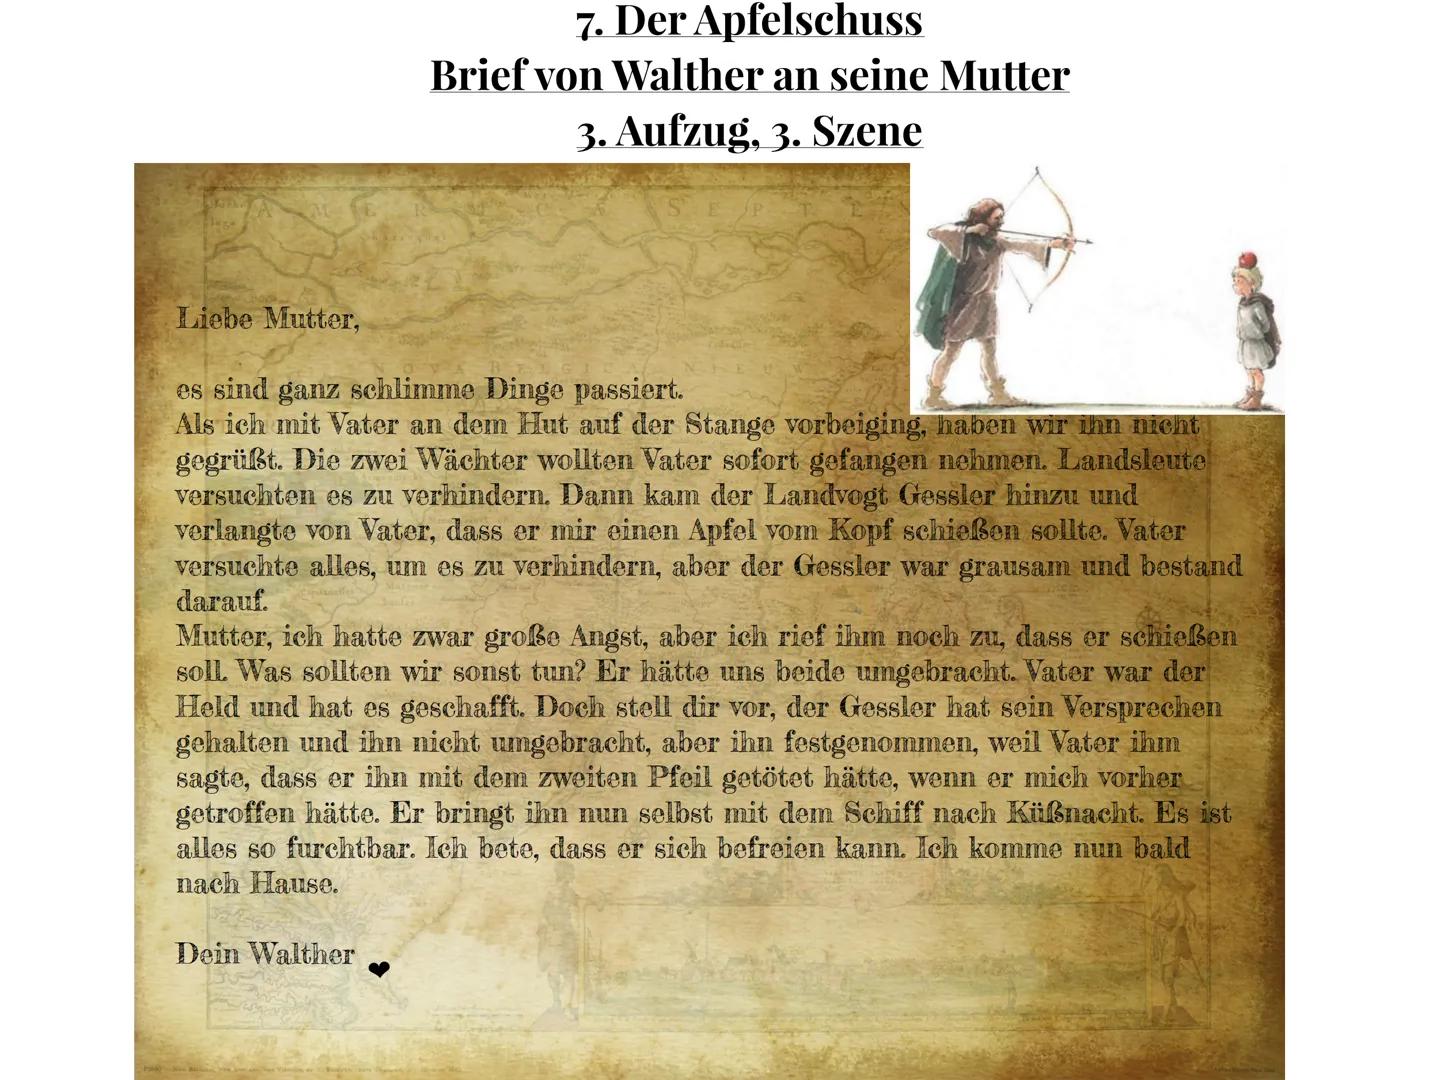 Lesetagebuch
über
Wilhelm Tell
von Friedrich Schiller
von
Nina Kimmel
Klasse 7c Inhaltsverzeichnis
1. Meine ersten Gedanken zur Hauptperson 